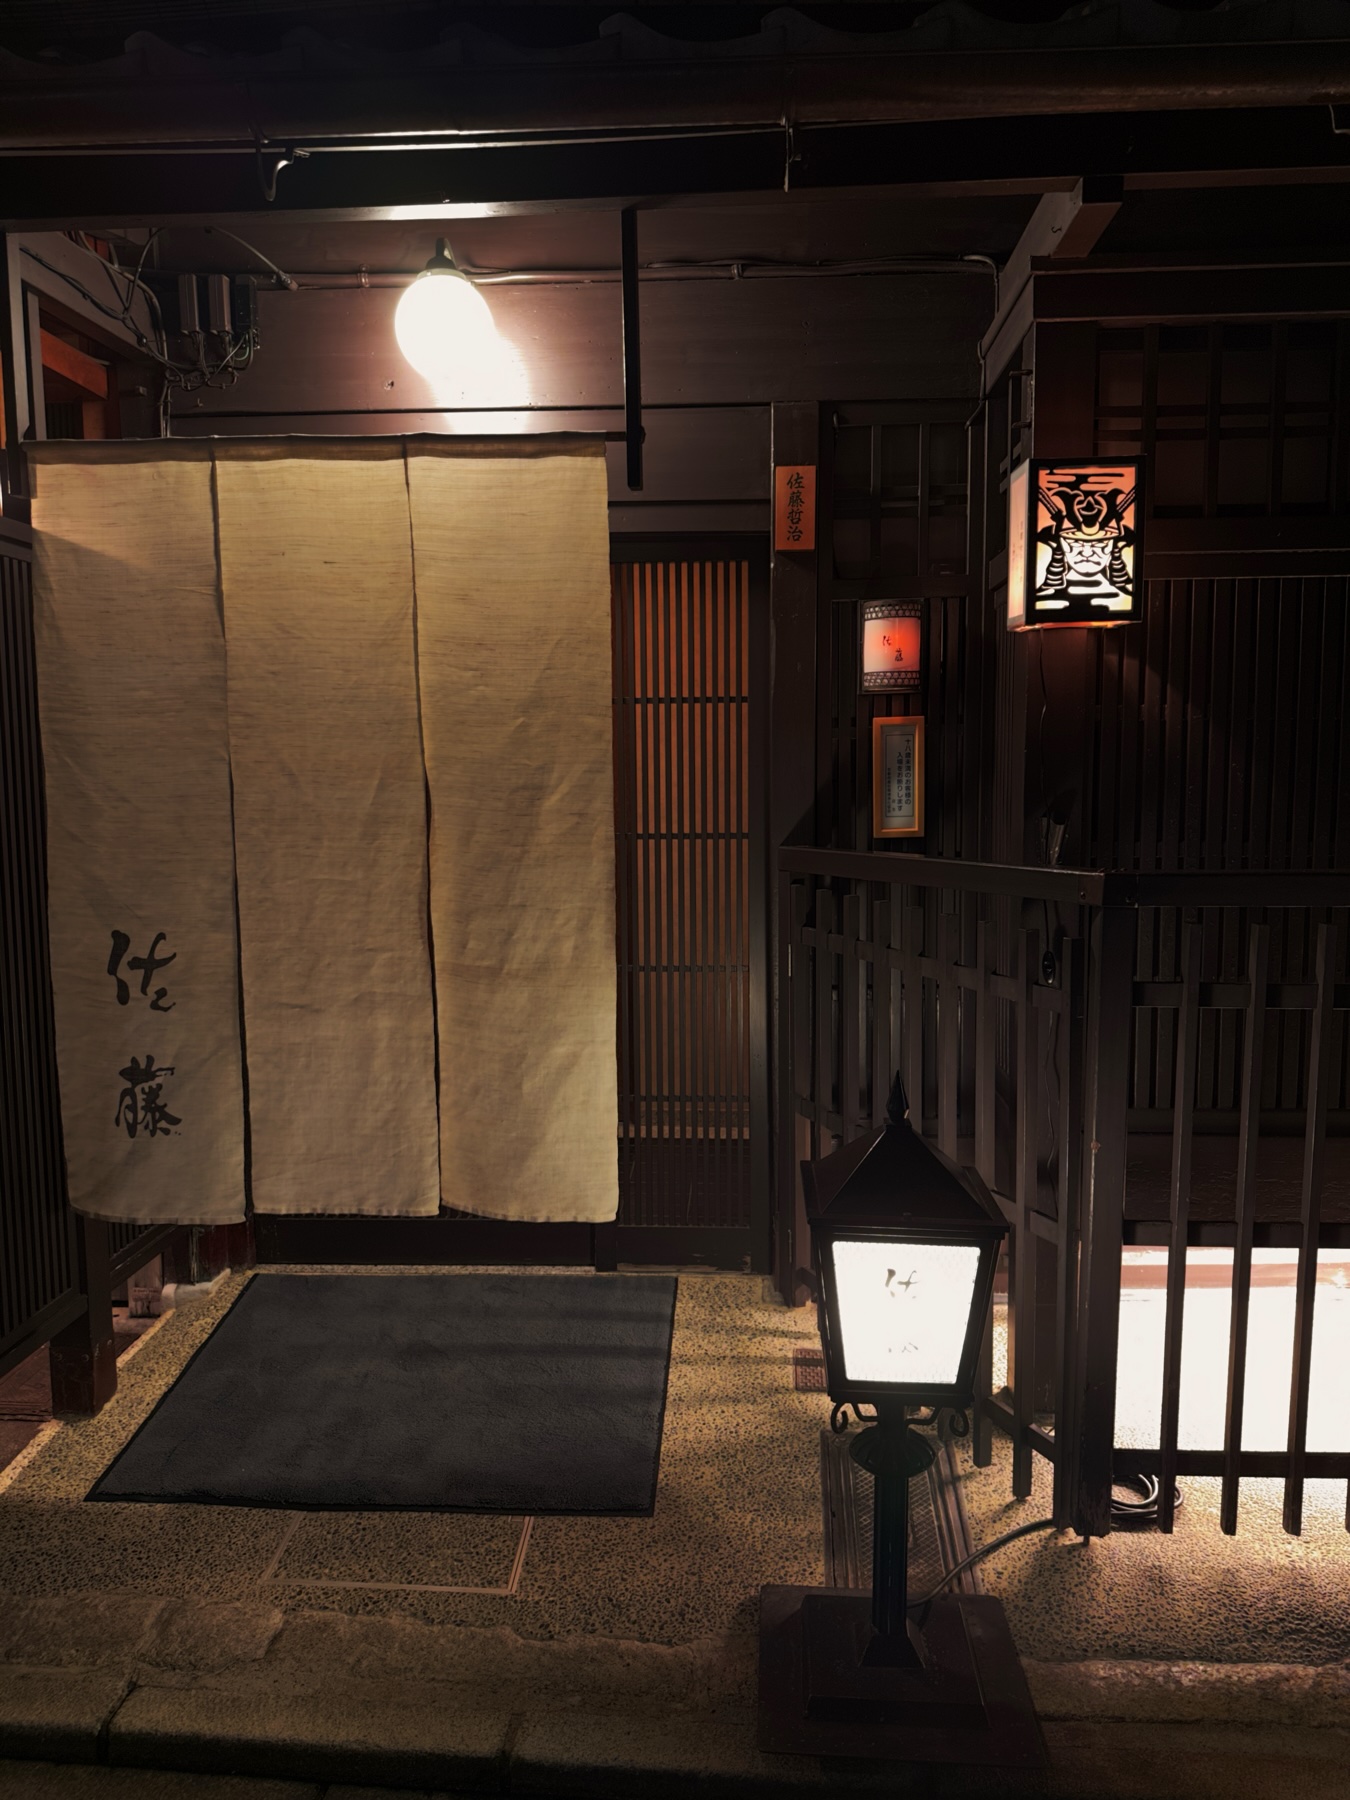 Entrance to a Kyoto restaurant with a lantern portraying a samurais face